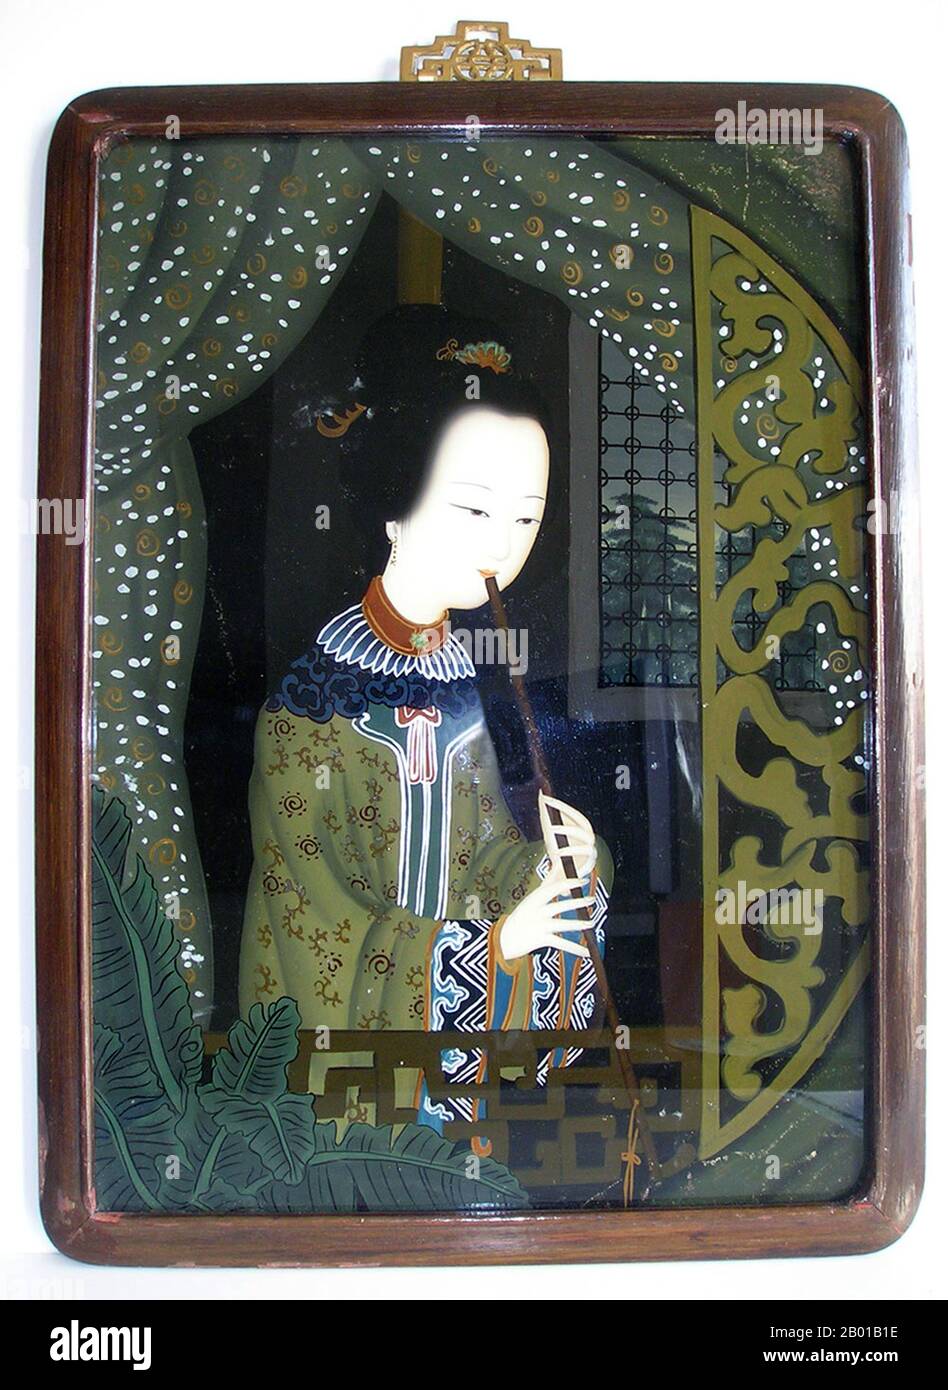 Cina: Pittura a specchio di una donna che gioca un flauto, la tarda dinastia Qing, c.. 1840-1860. La pittura inversa sul vetro è una forma artistica che consiste nell'applicare la vernice a un pezzo di vetro e quindi visualizzare l'immagine girando il vetro e guardando attraverso il vetro l'immagine. Foto Stock